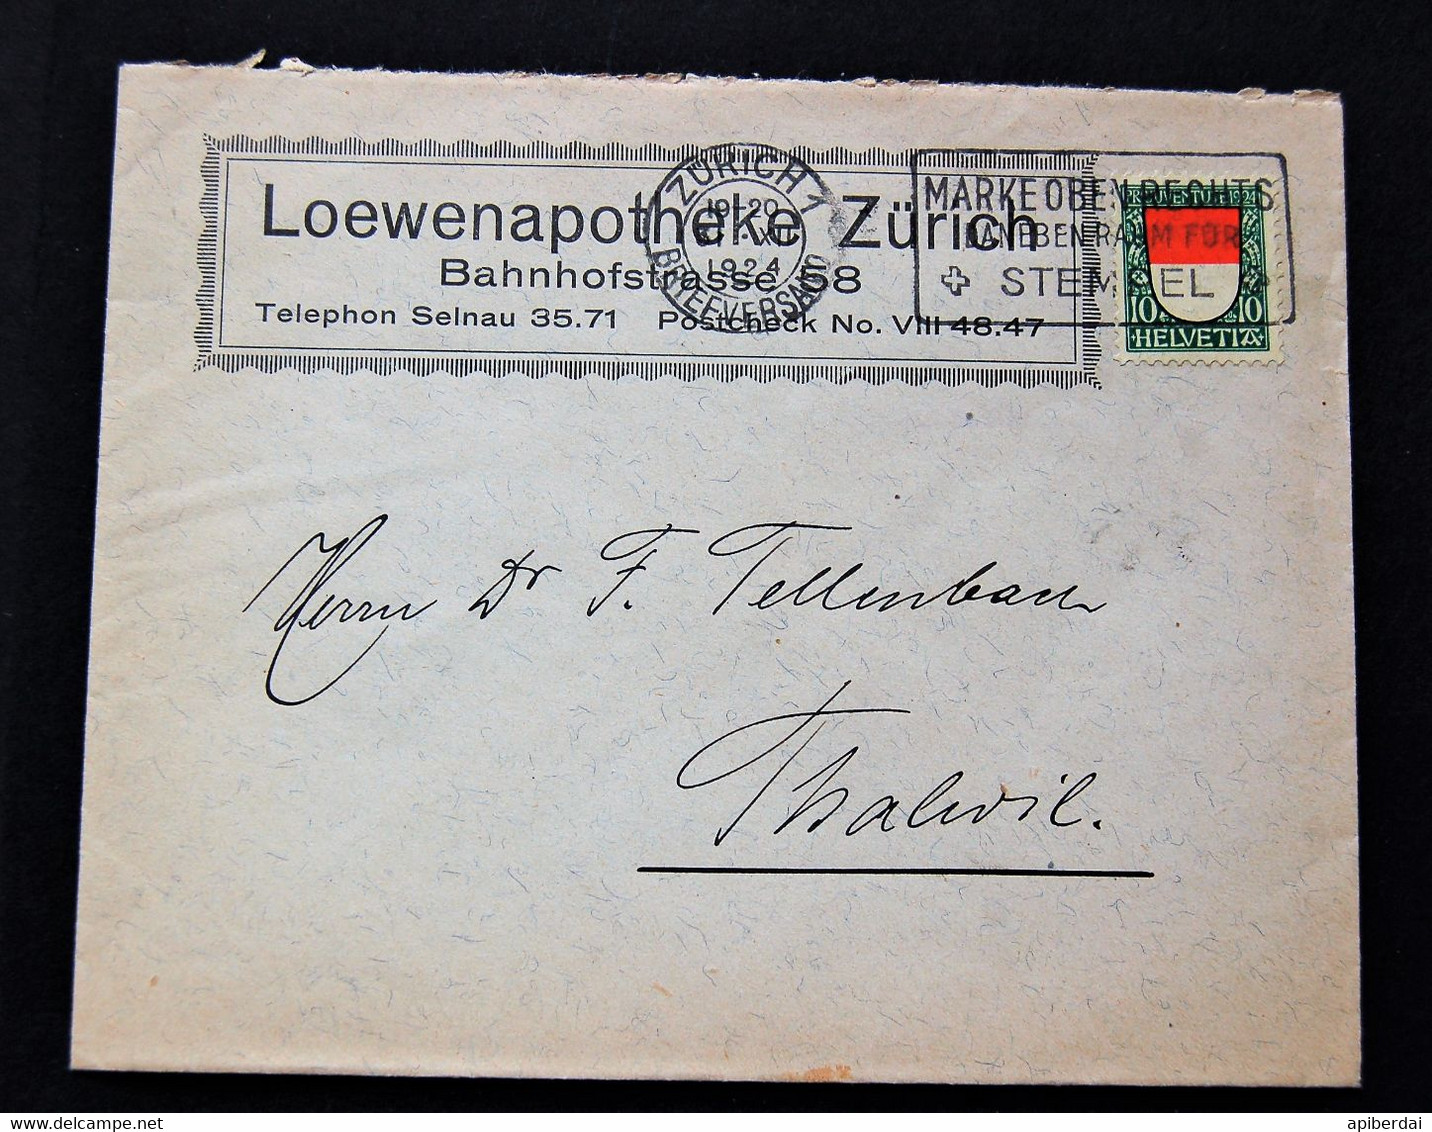 Suisse Switzerland - Timbre De 10c 1924 Pro Patria Seul Sur Lettre - Lettres & Documents